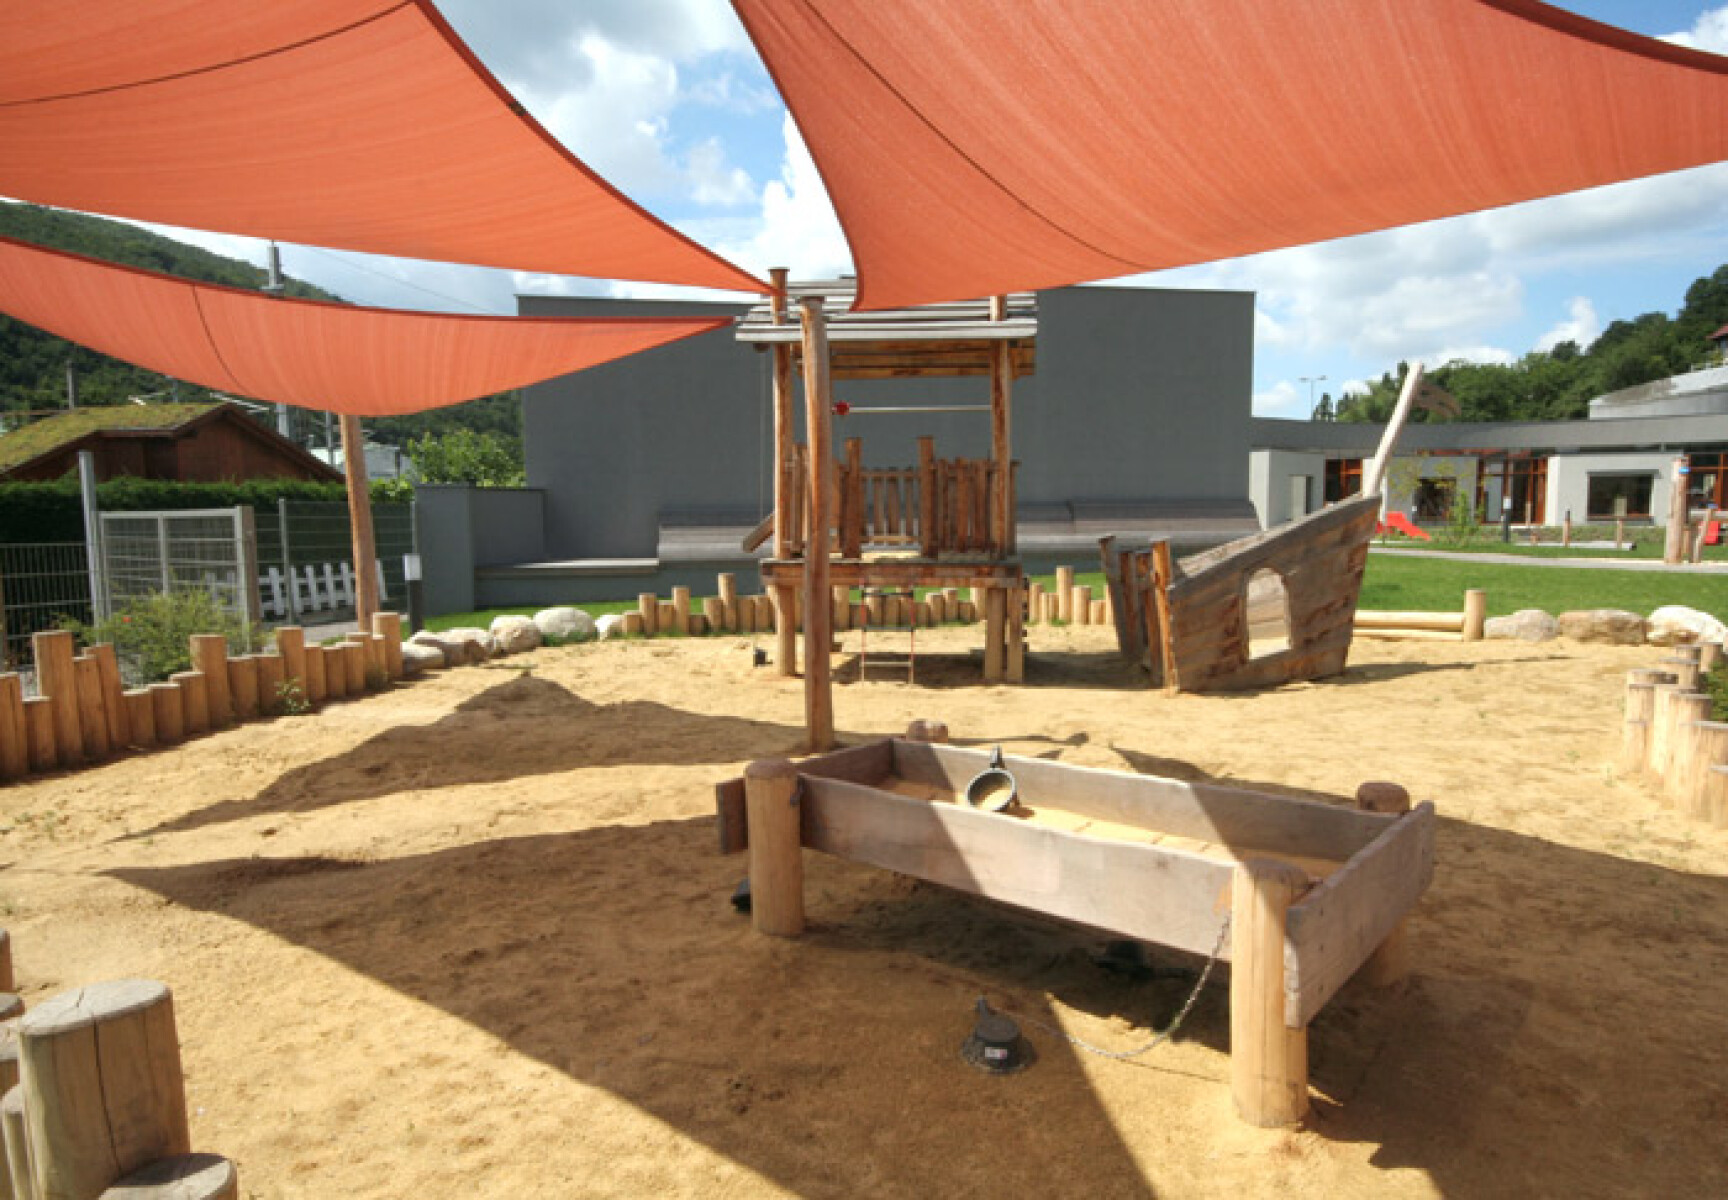 sandspielanlage mit beschattung und einem spielhaus